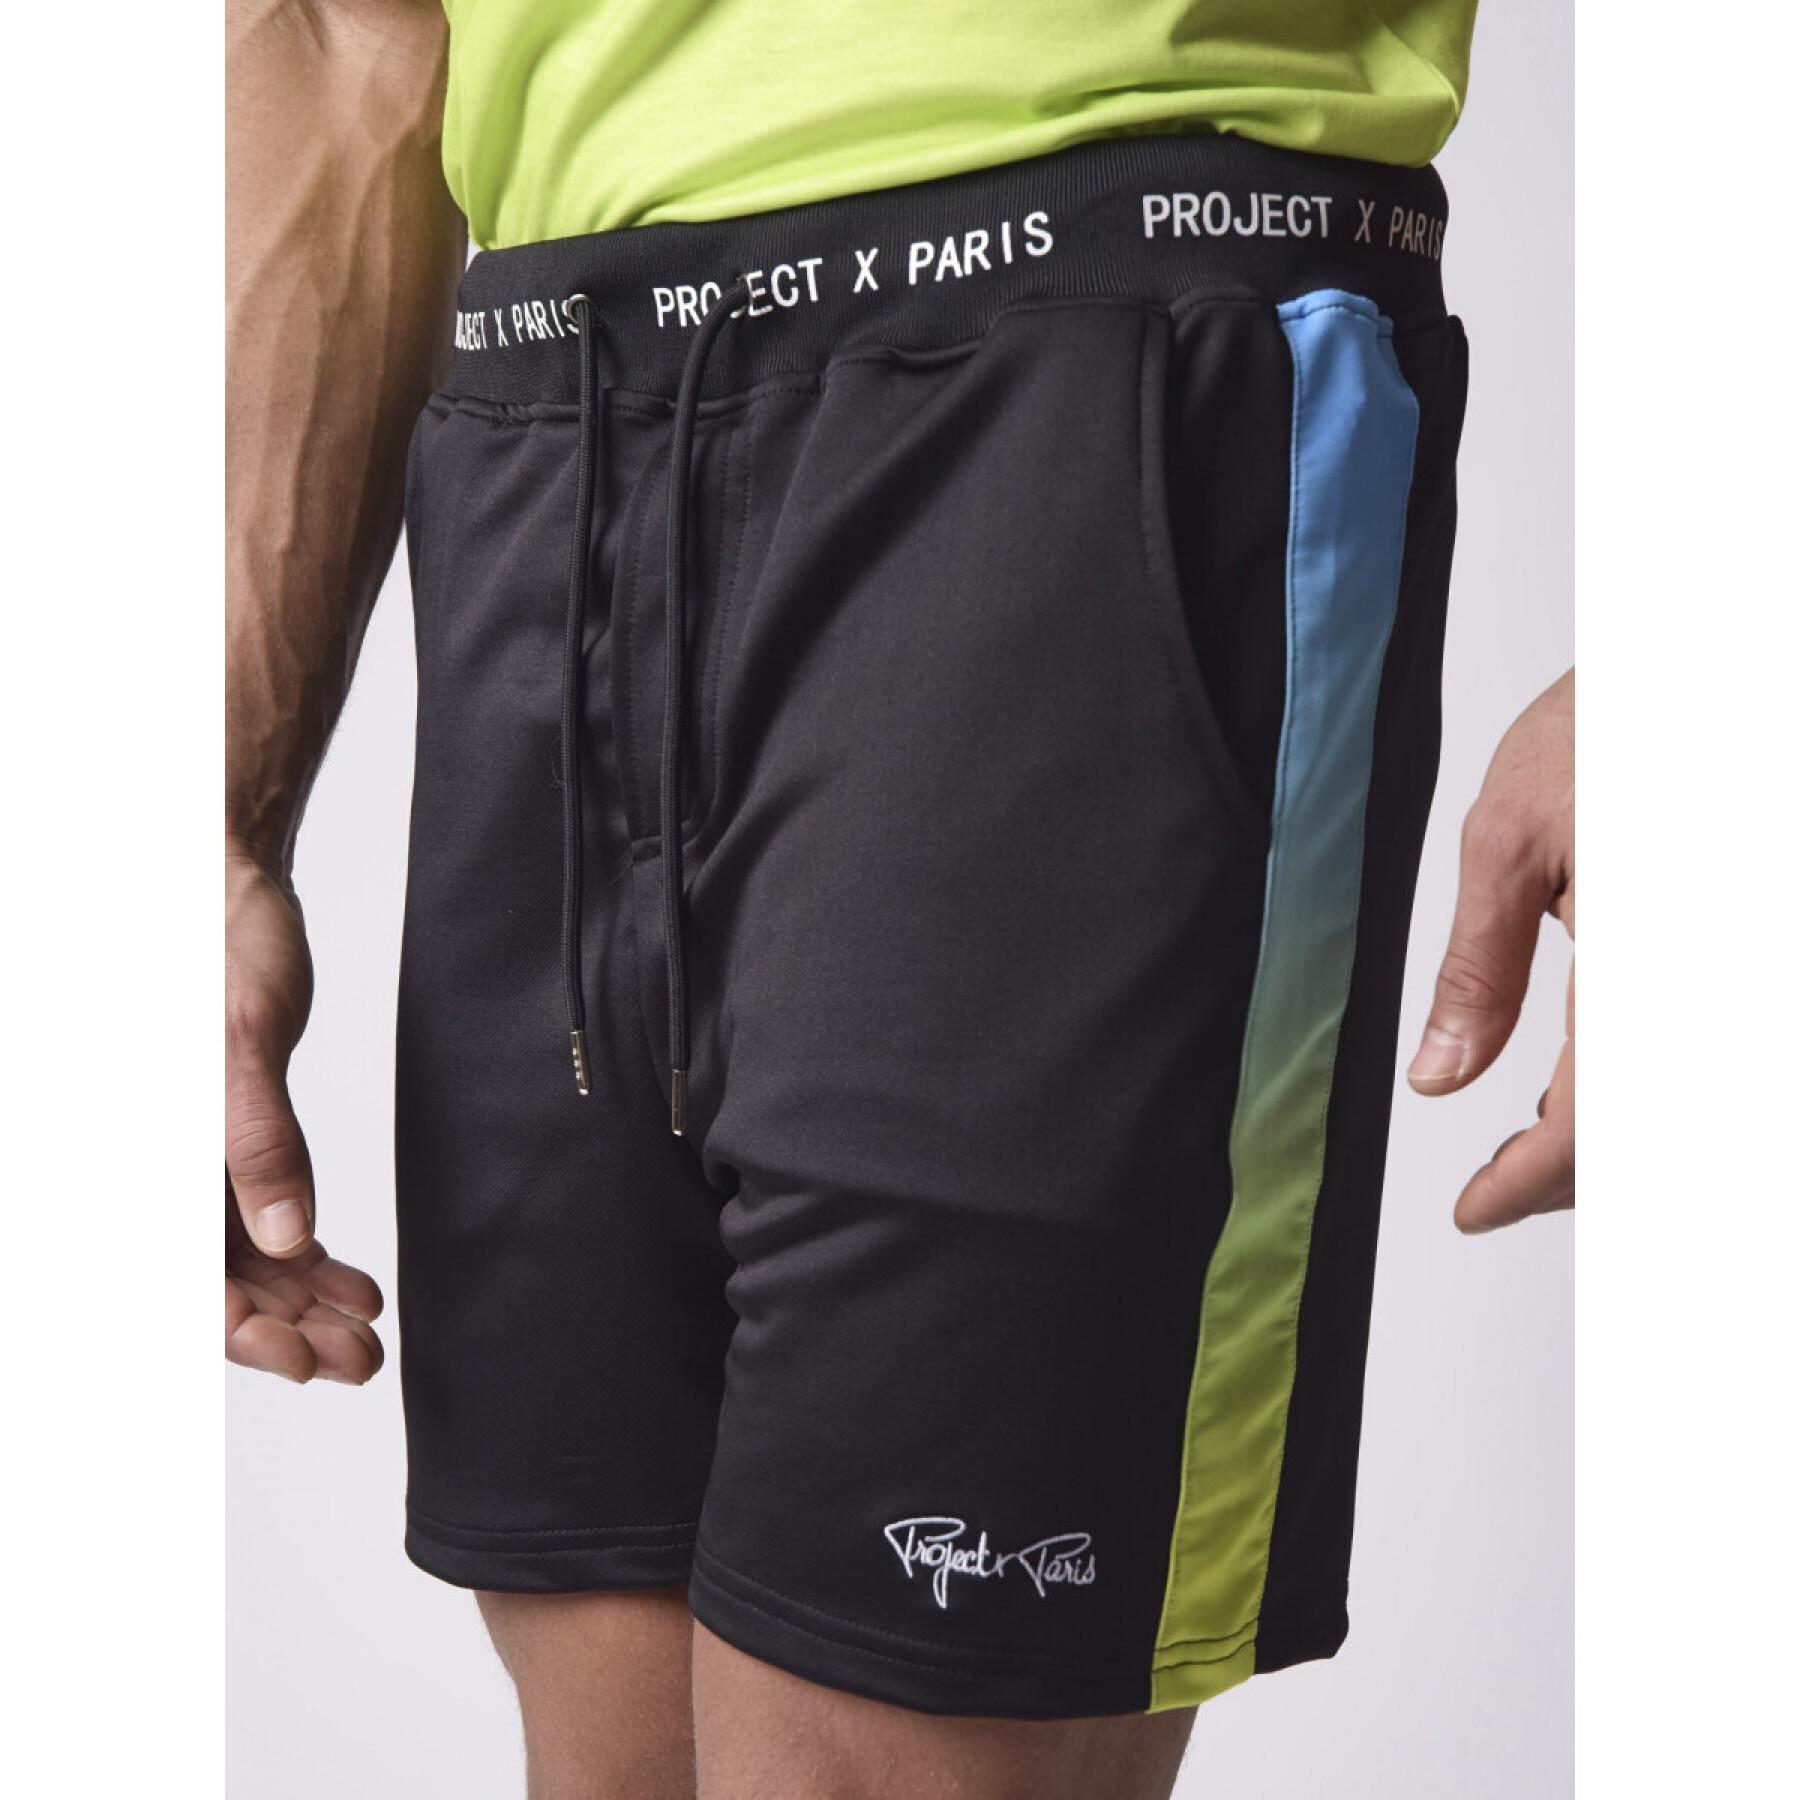 Bedrukte shorts met kleurverloop Project X Paris